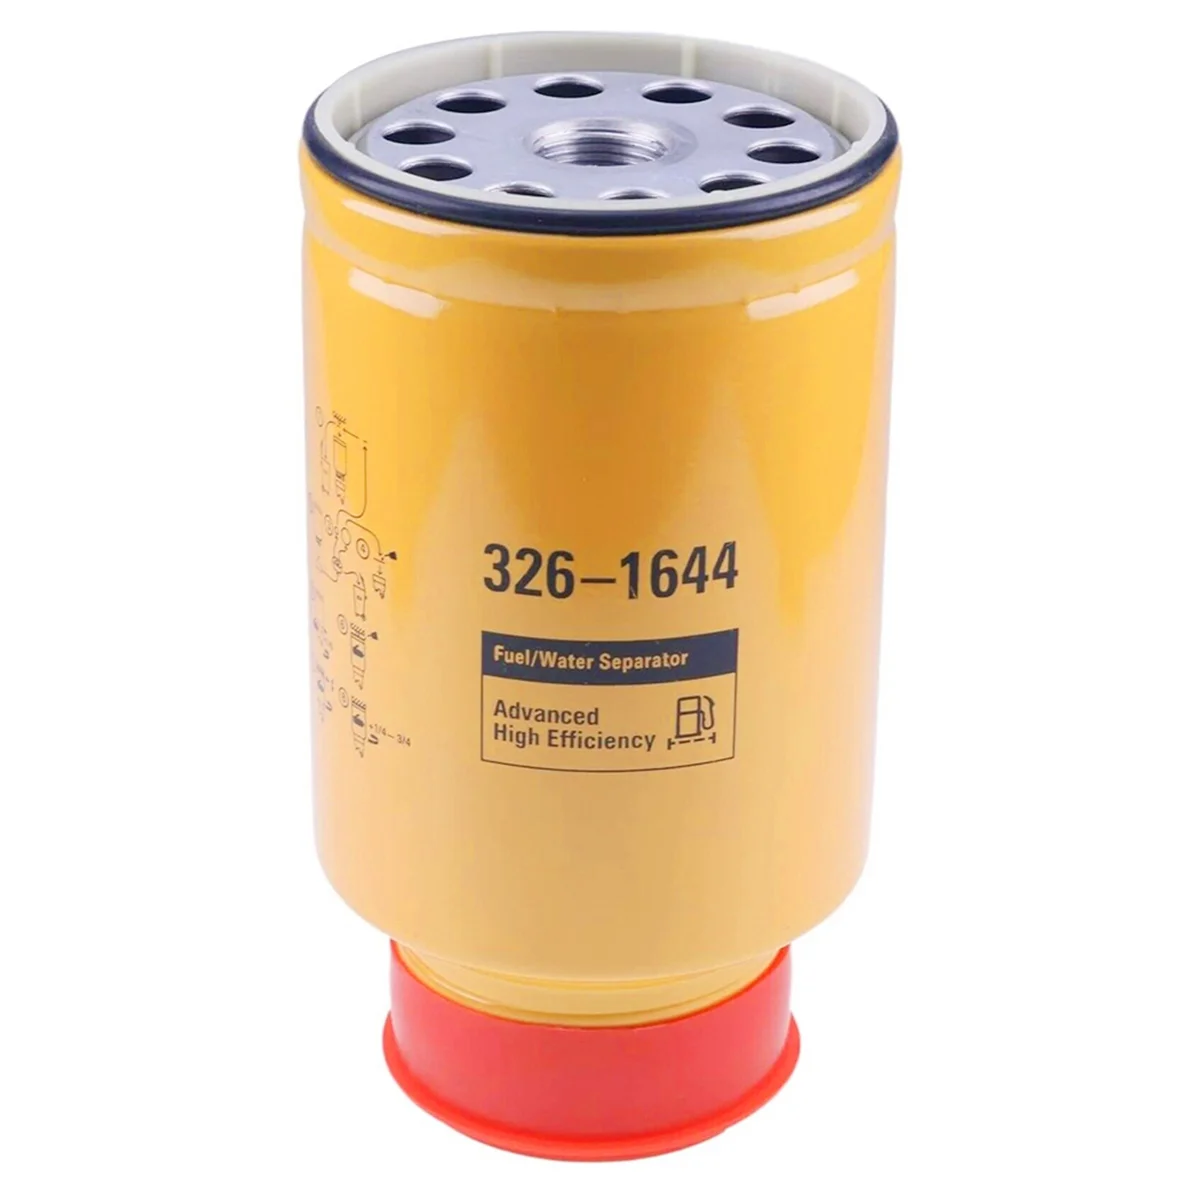 

326-1644 3261644 1R0770 Diesel Oil Water Separator Filter for Caterpillar CAT 320C 320D 323D 325D 329D 330D 336D